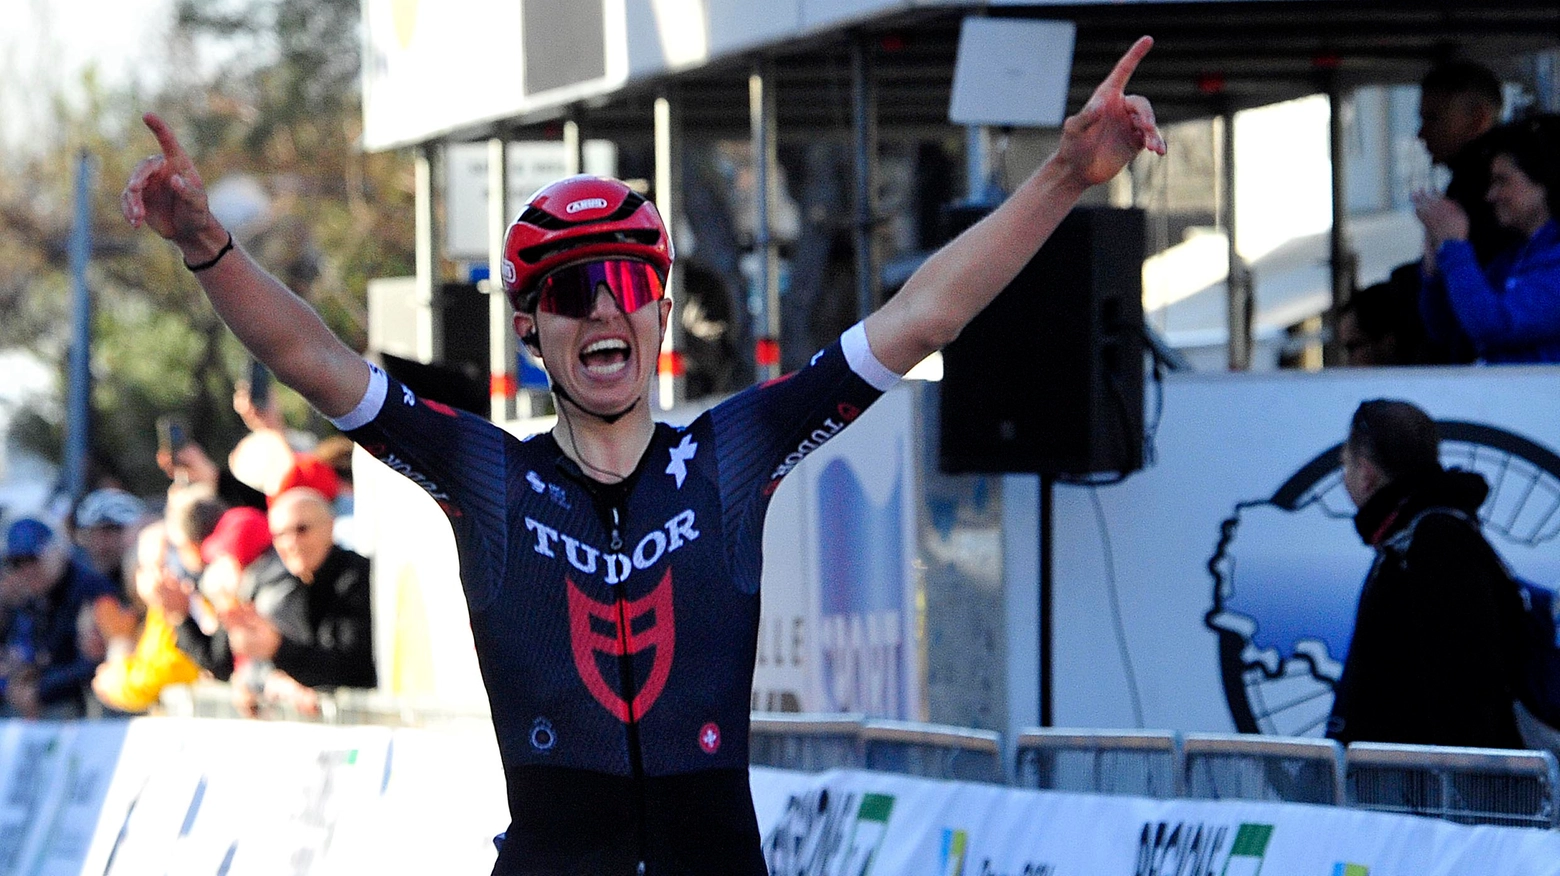 Marco Brenner vincitore della prima tappa della Tudor Pro Cycling Team